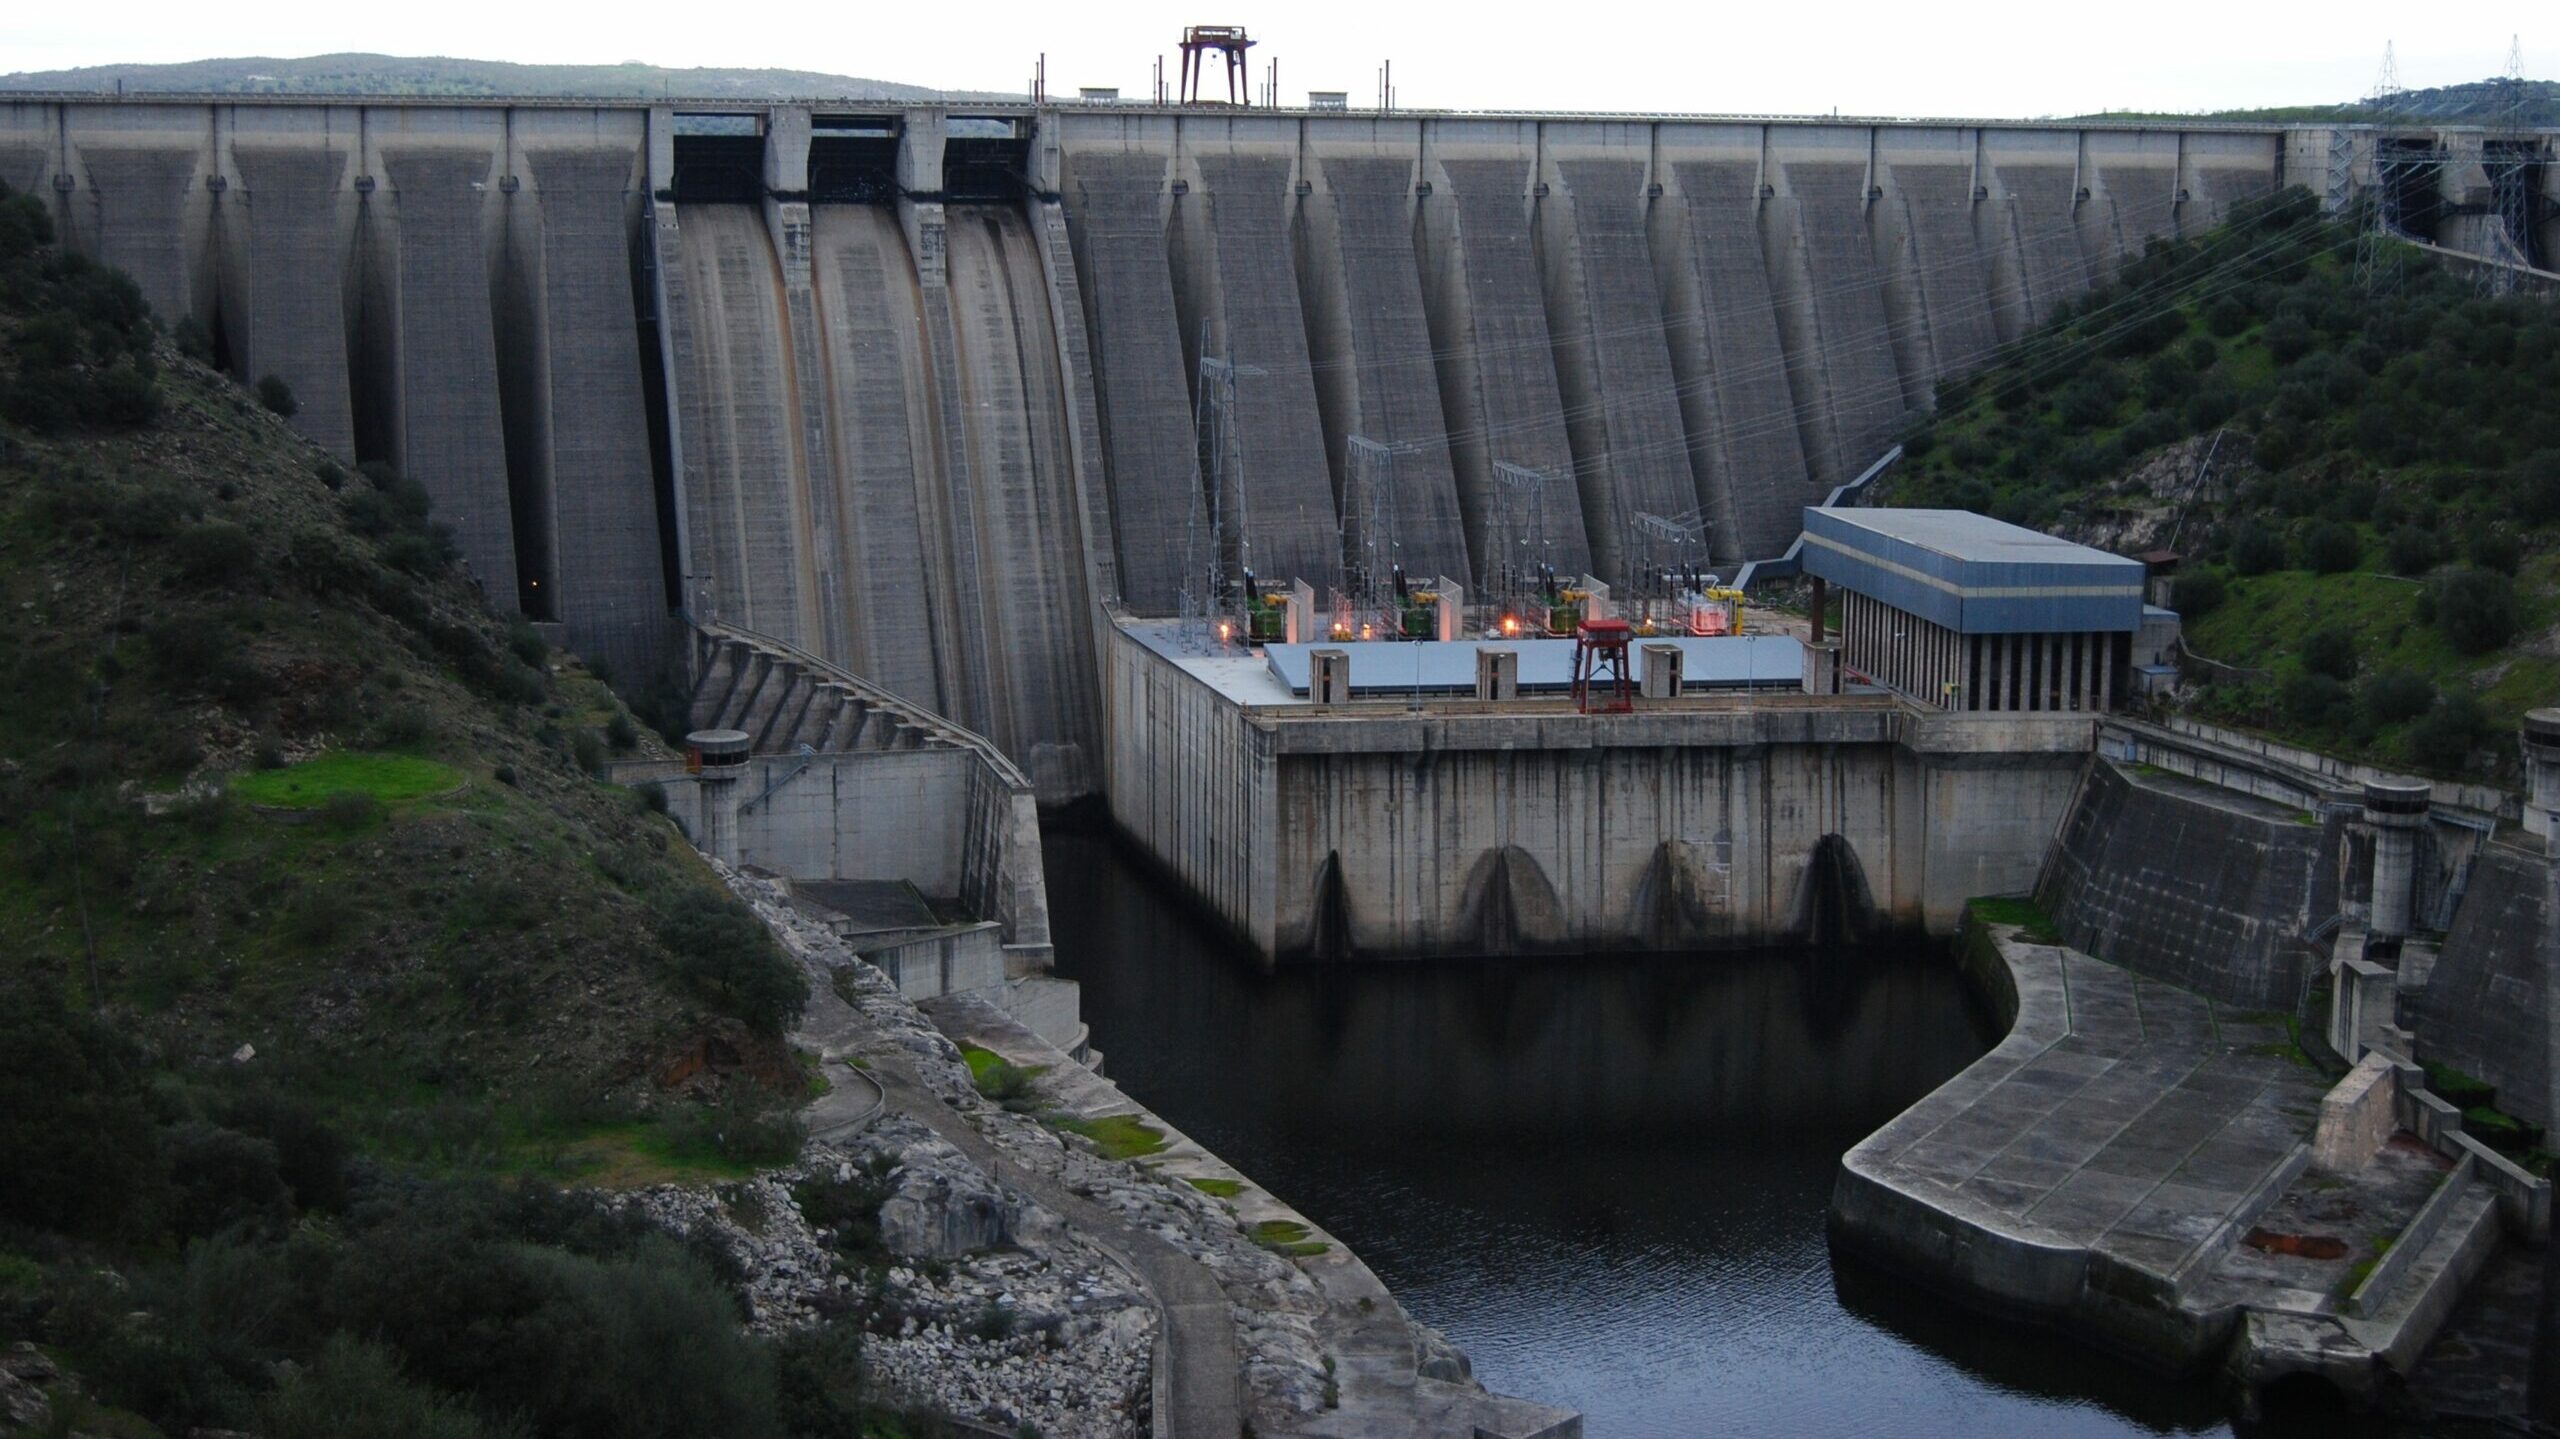 Grupo Navarro pone a la venta sus centrales hidroeléctricas con Endesa al acecho